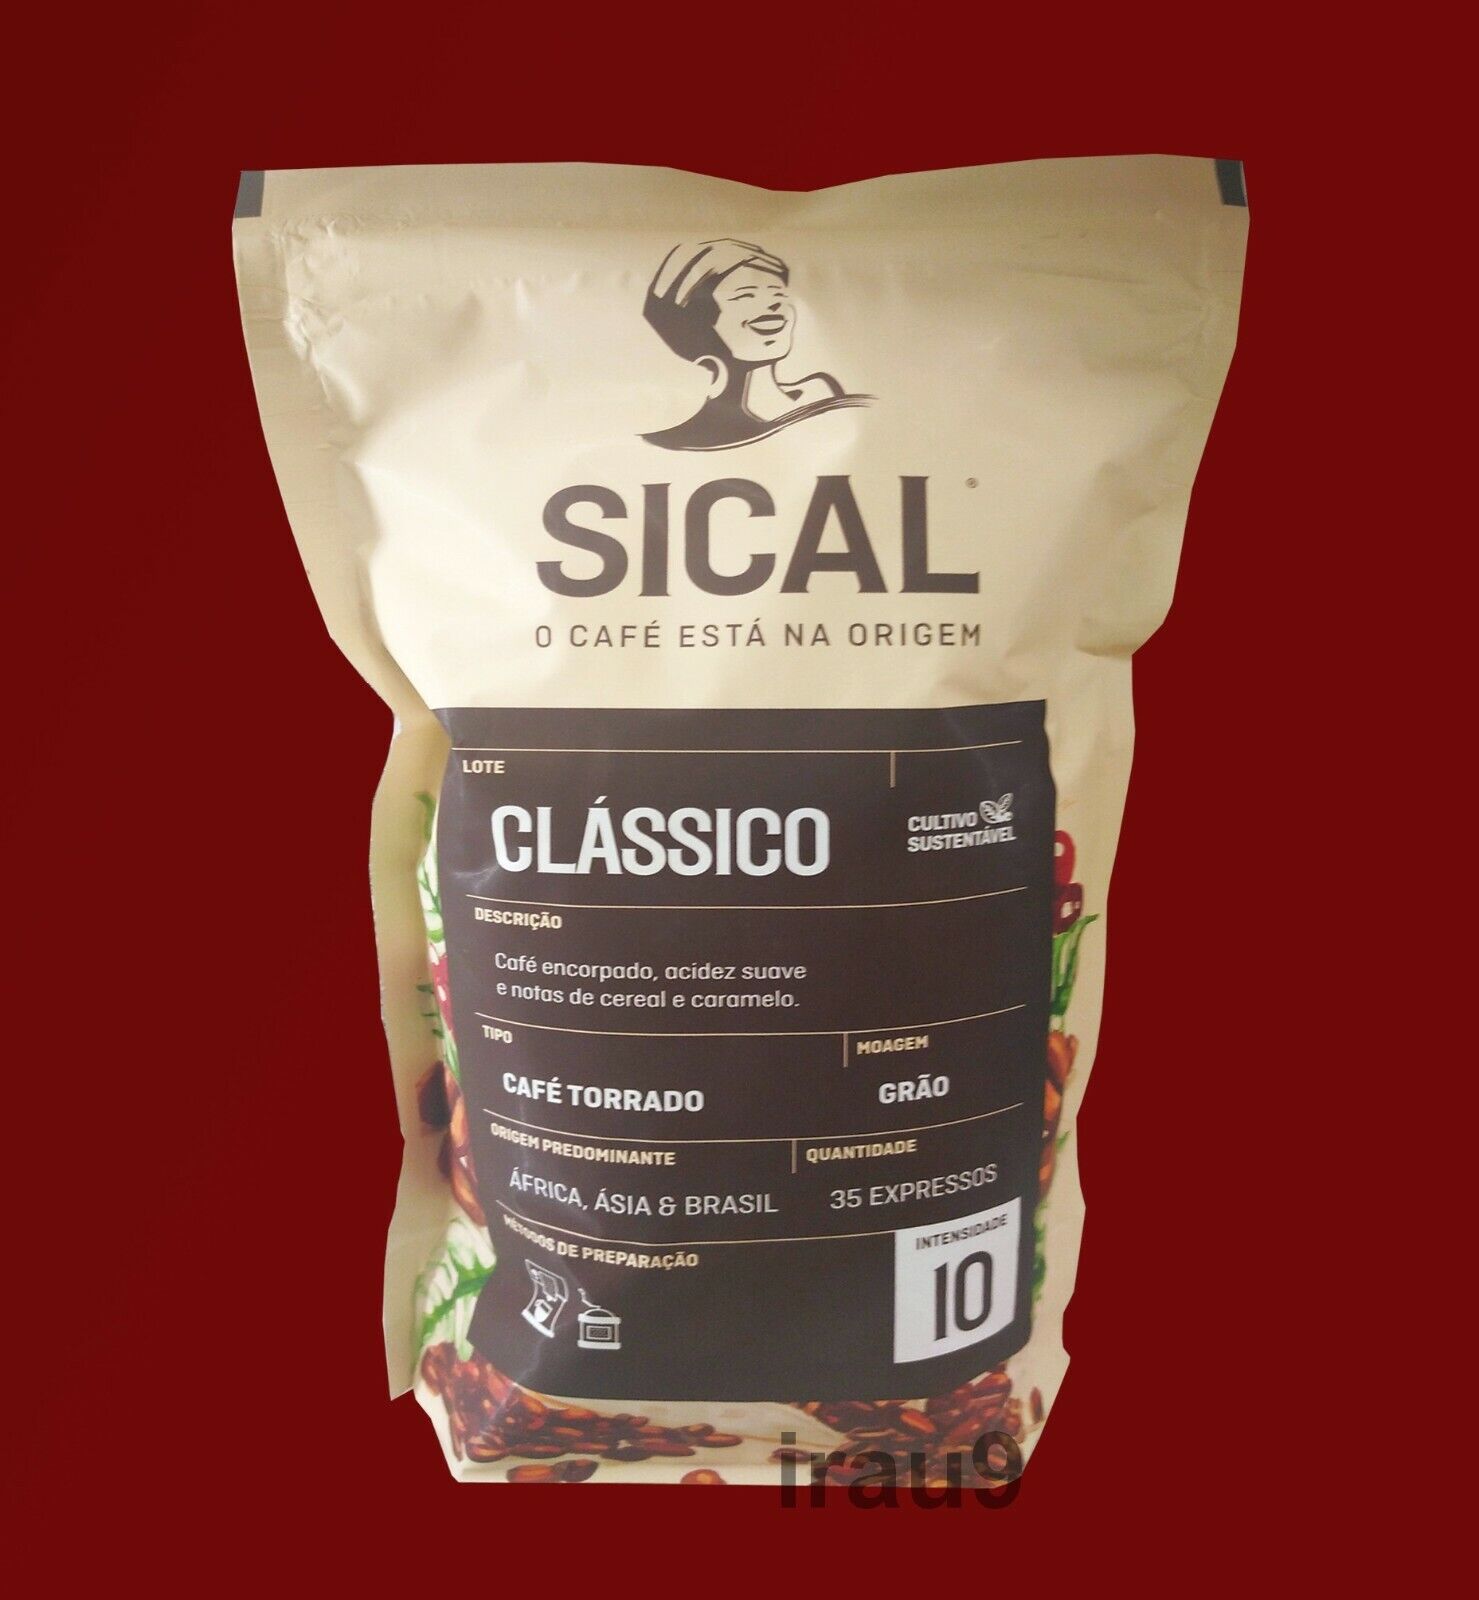 Sical Coffee Beans Portuguese Café de Portugal Espresso - Body & Aroma 250g 